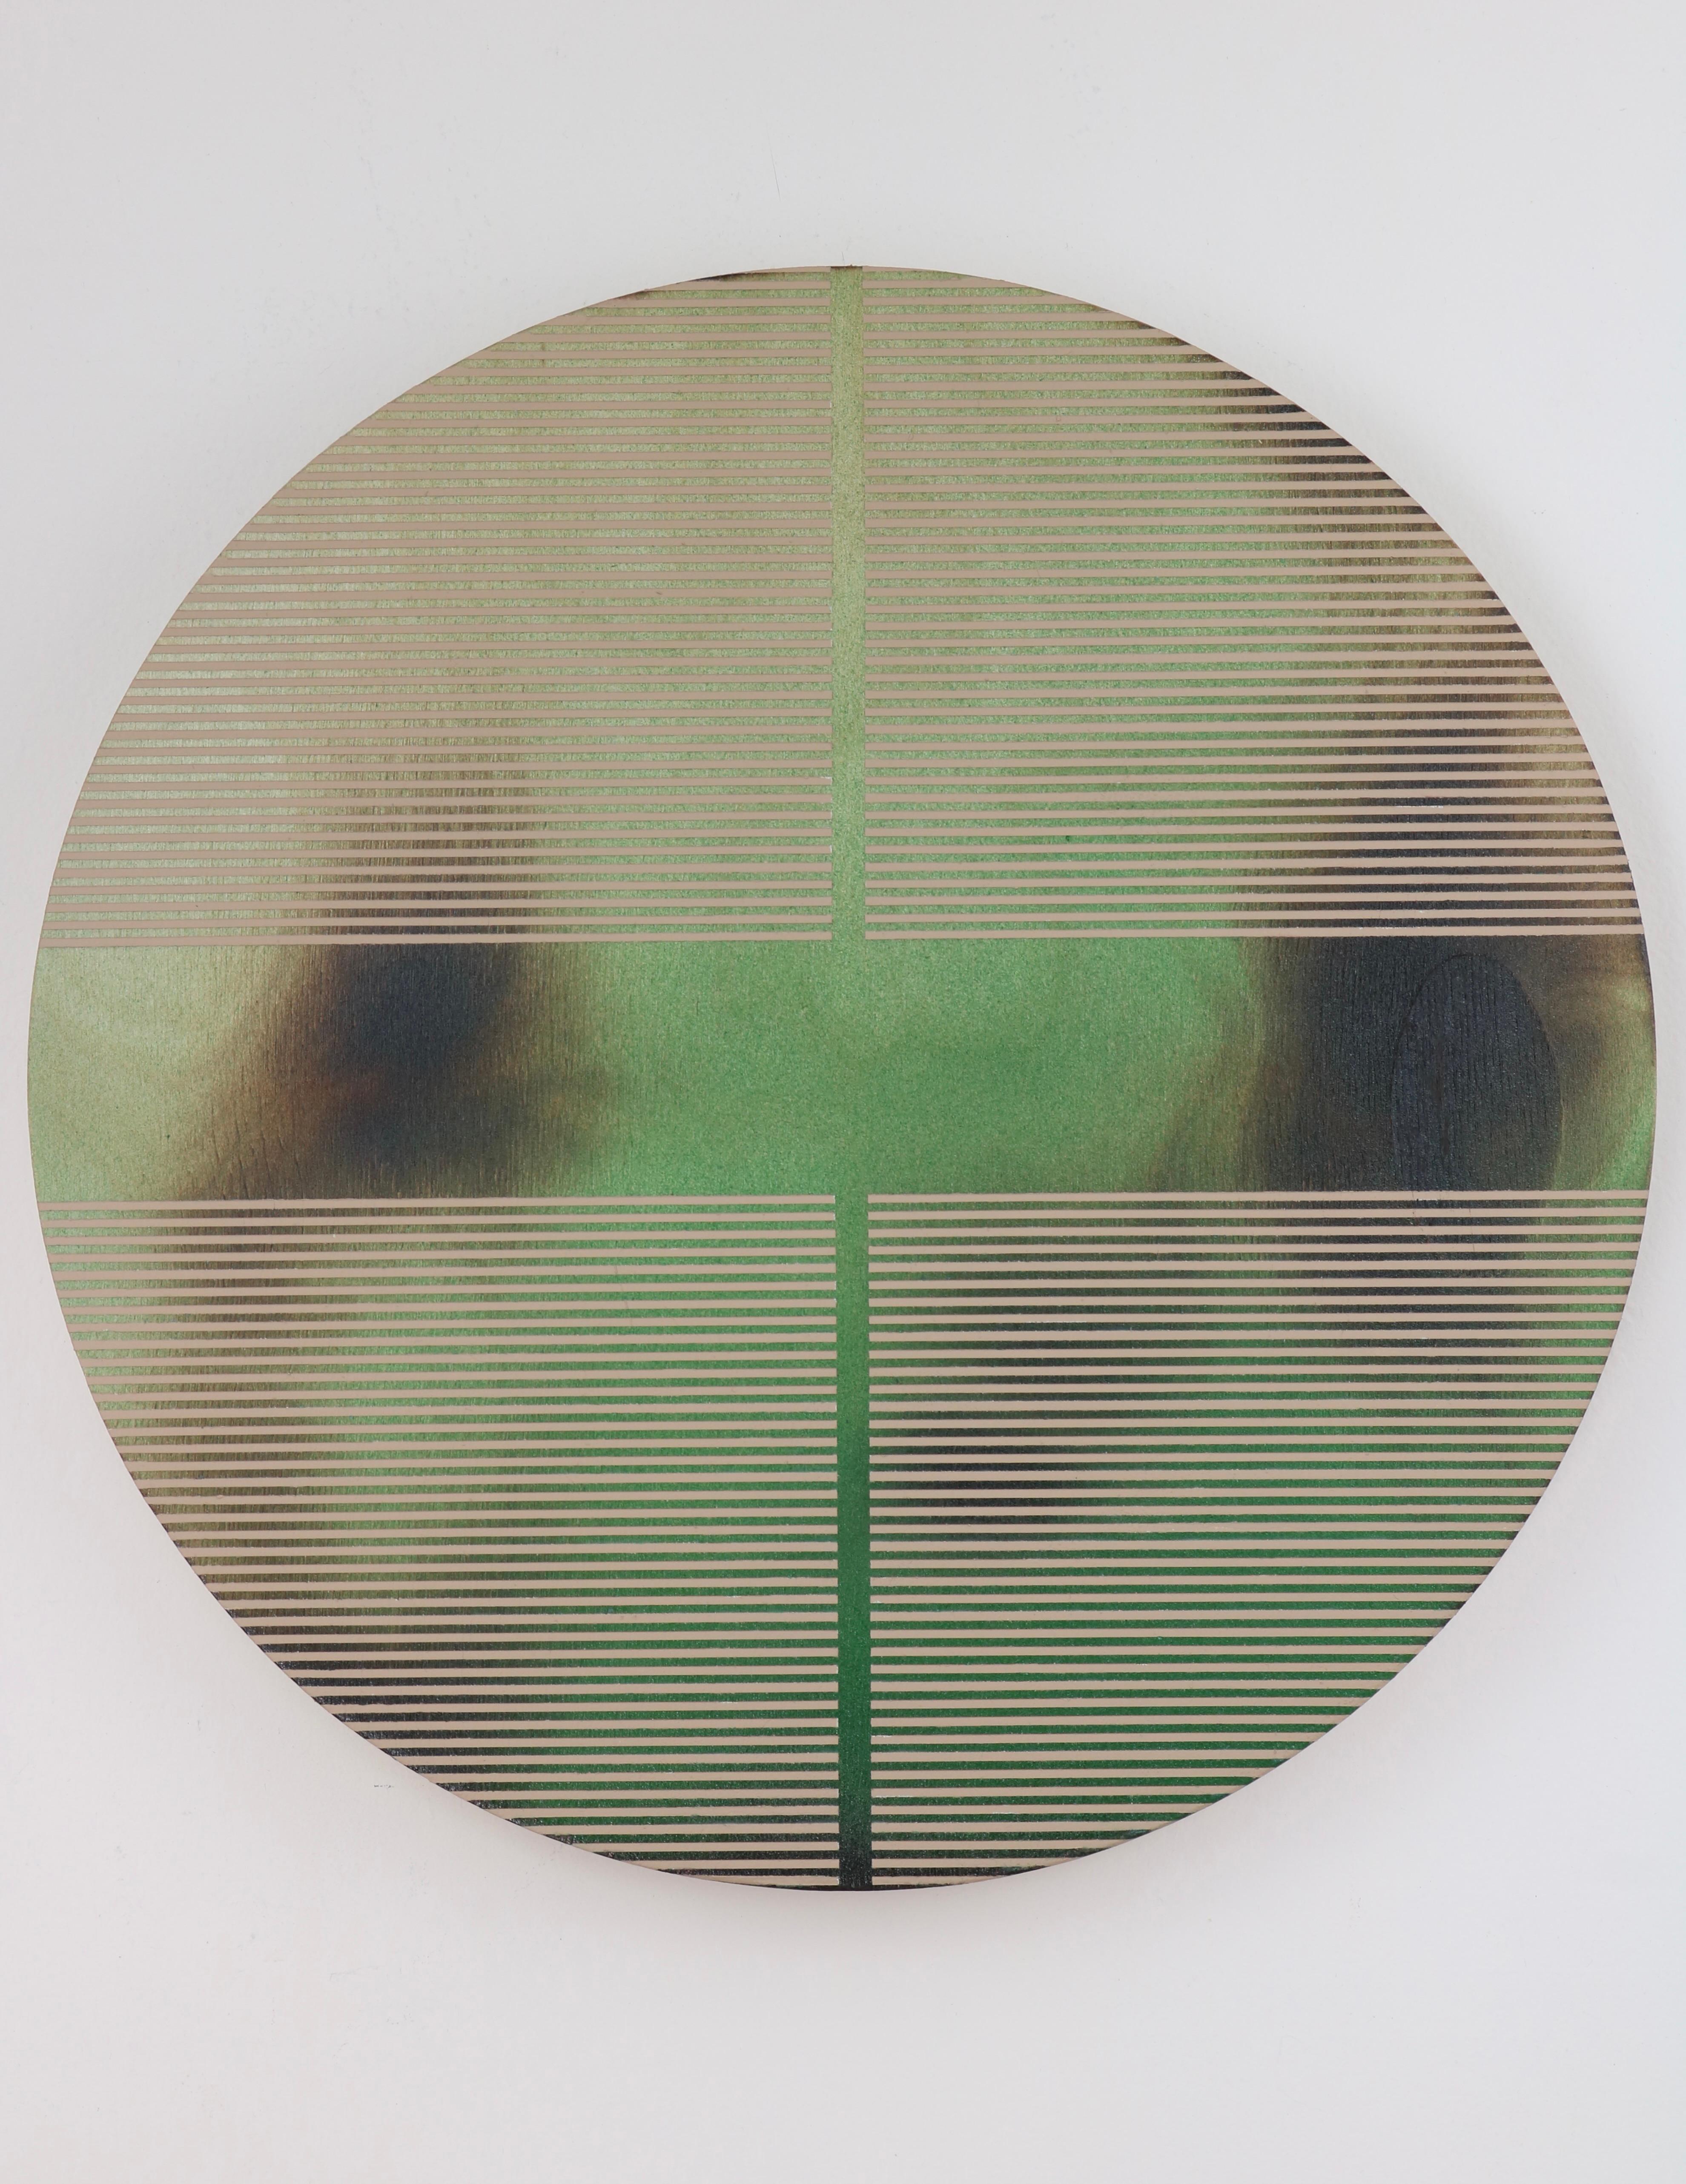 Abstract Painting Melisa Taylor Metzger - Pilule verte de Dill pickle (peinture ronde minimaliste sur bois couleur dopamine)